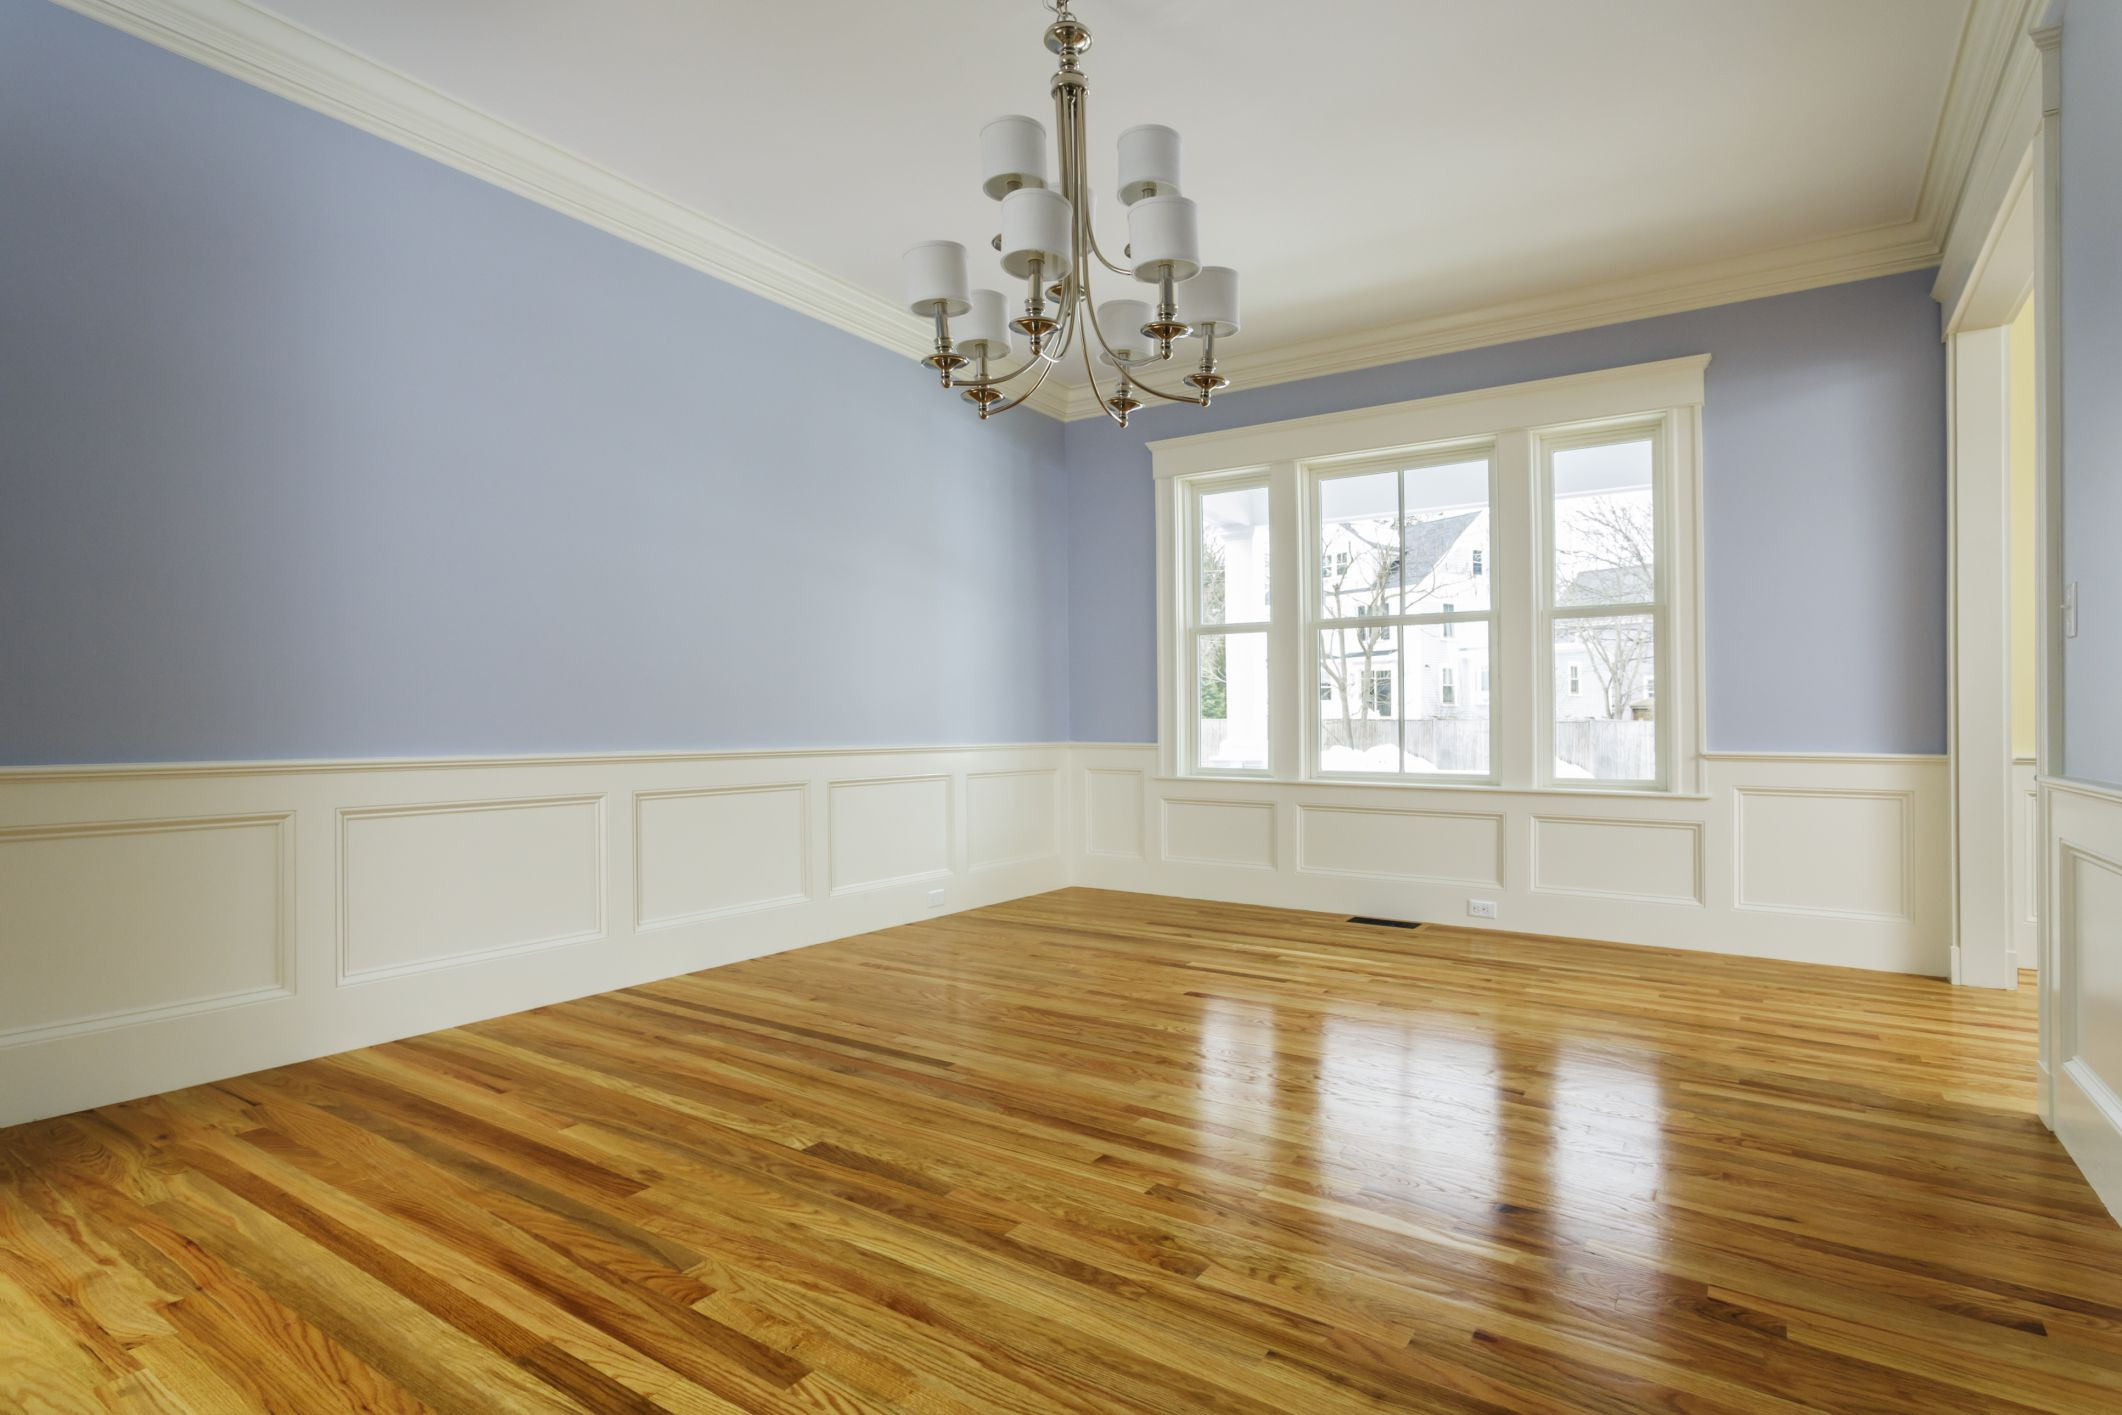 18 Stunning Refinish Hardwood Floors without Sanding Products 2024 free download refinish hardwood floors without sanding products of the cost to refinish hardwood floors in 168686572 highres 56a2fd773df78cf7727b6cb3